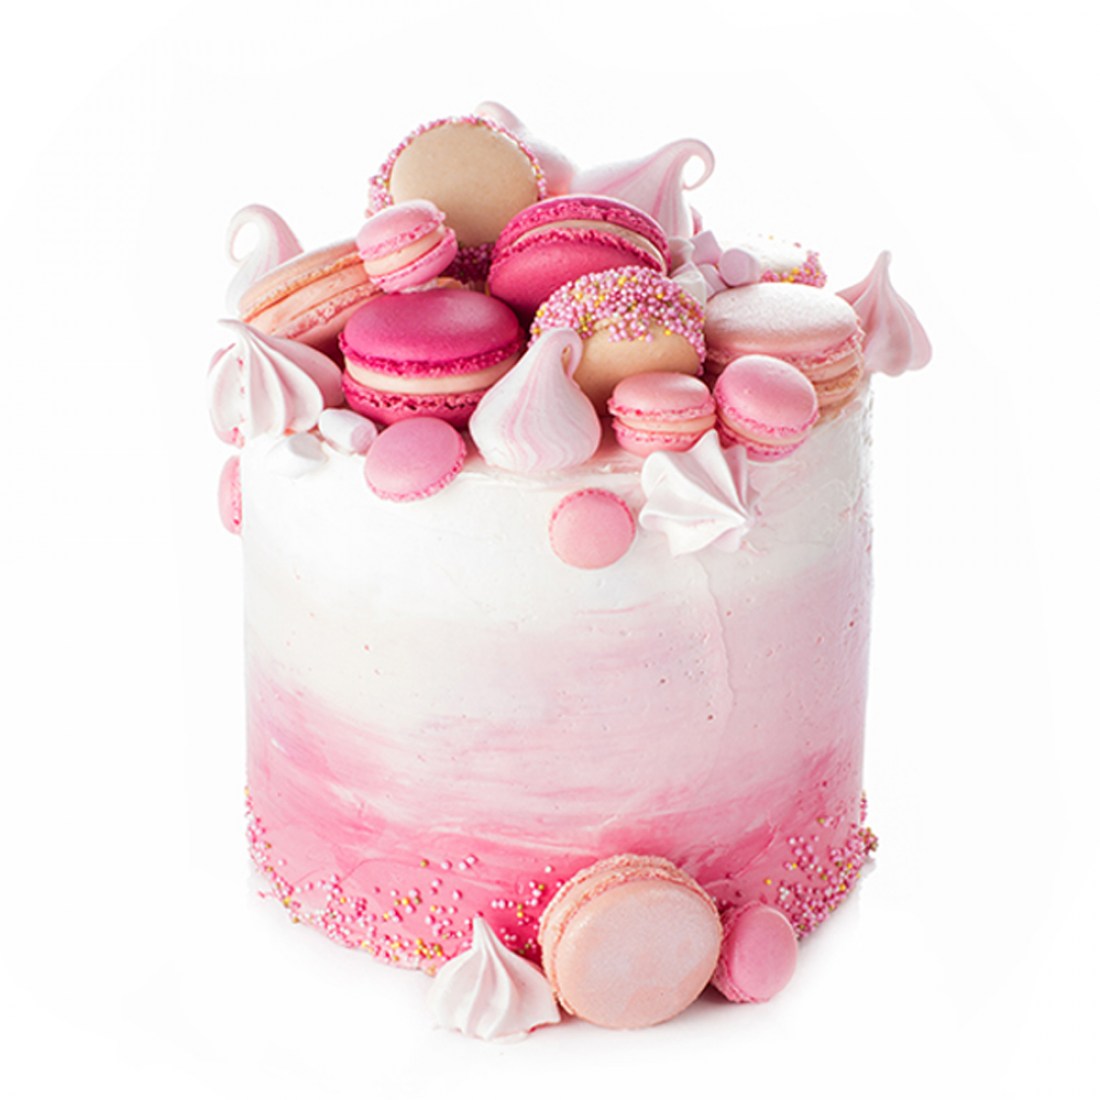 Pink cake Ollies